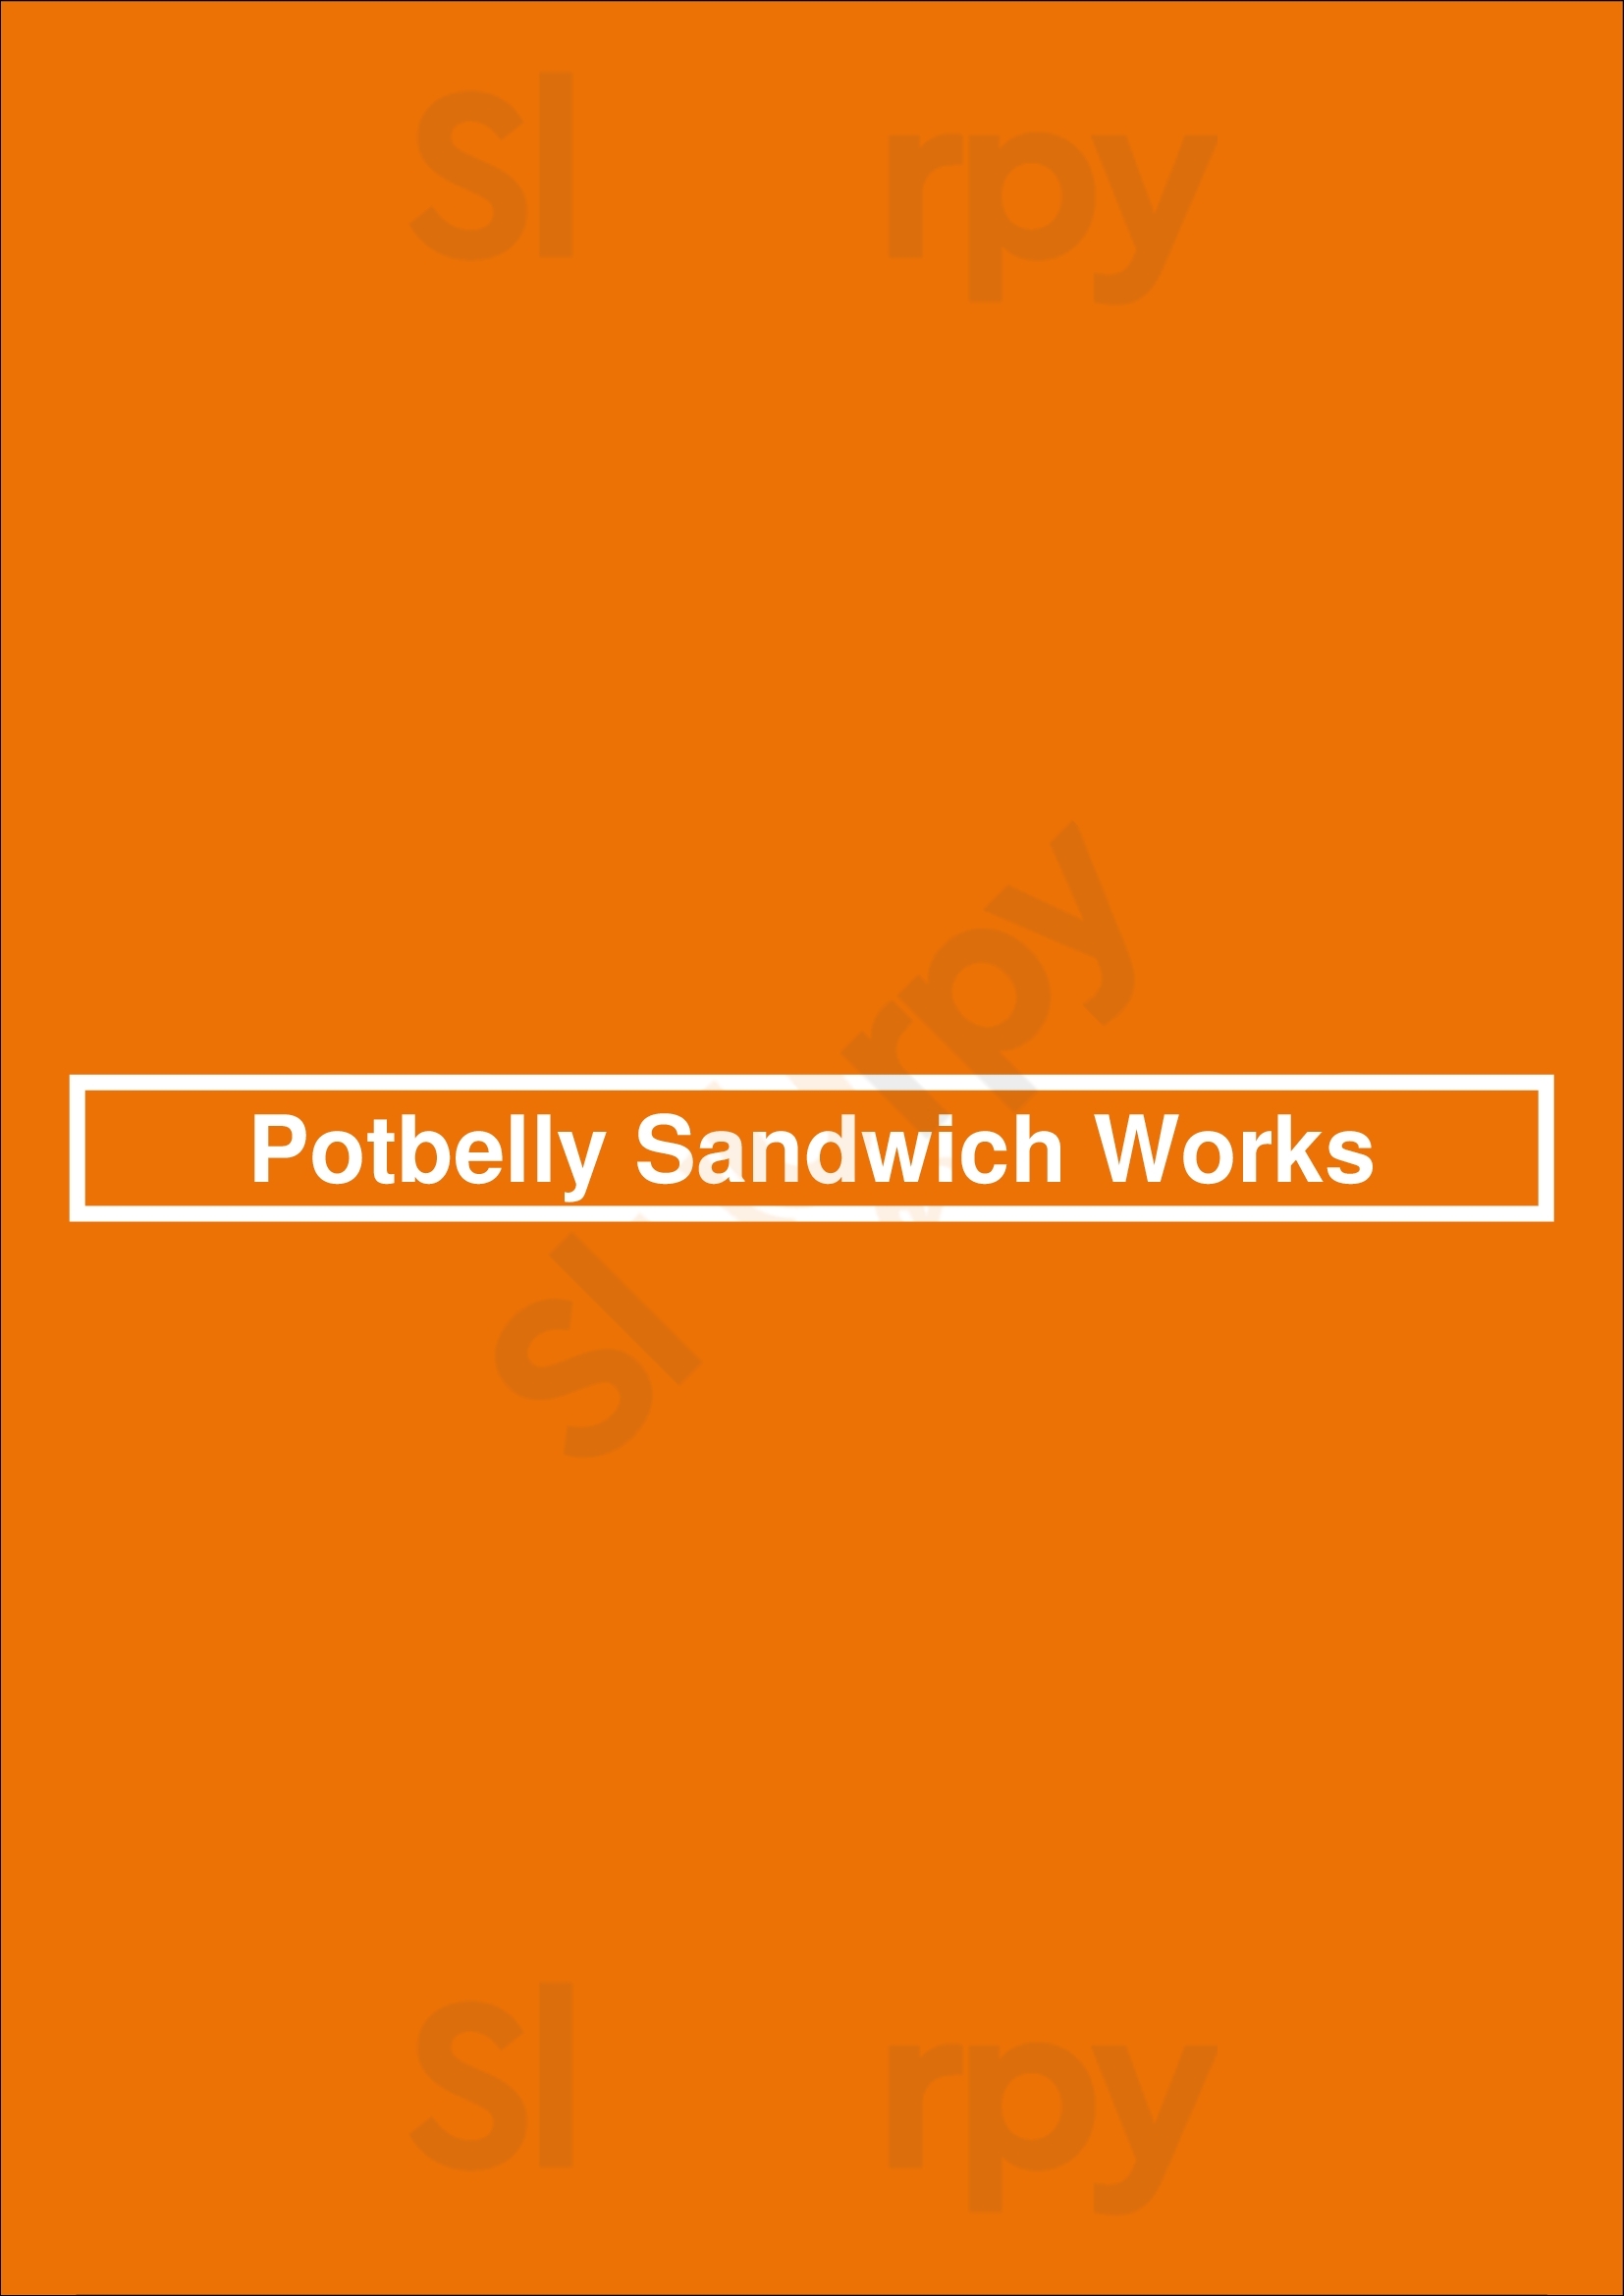 Potbelly Sandwich Shop Baltimore Menu - 1